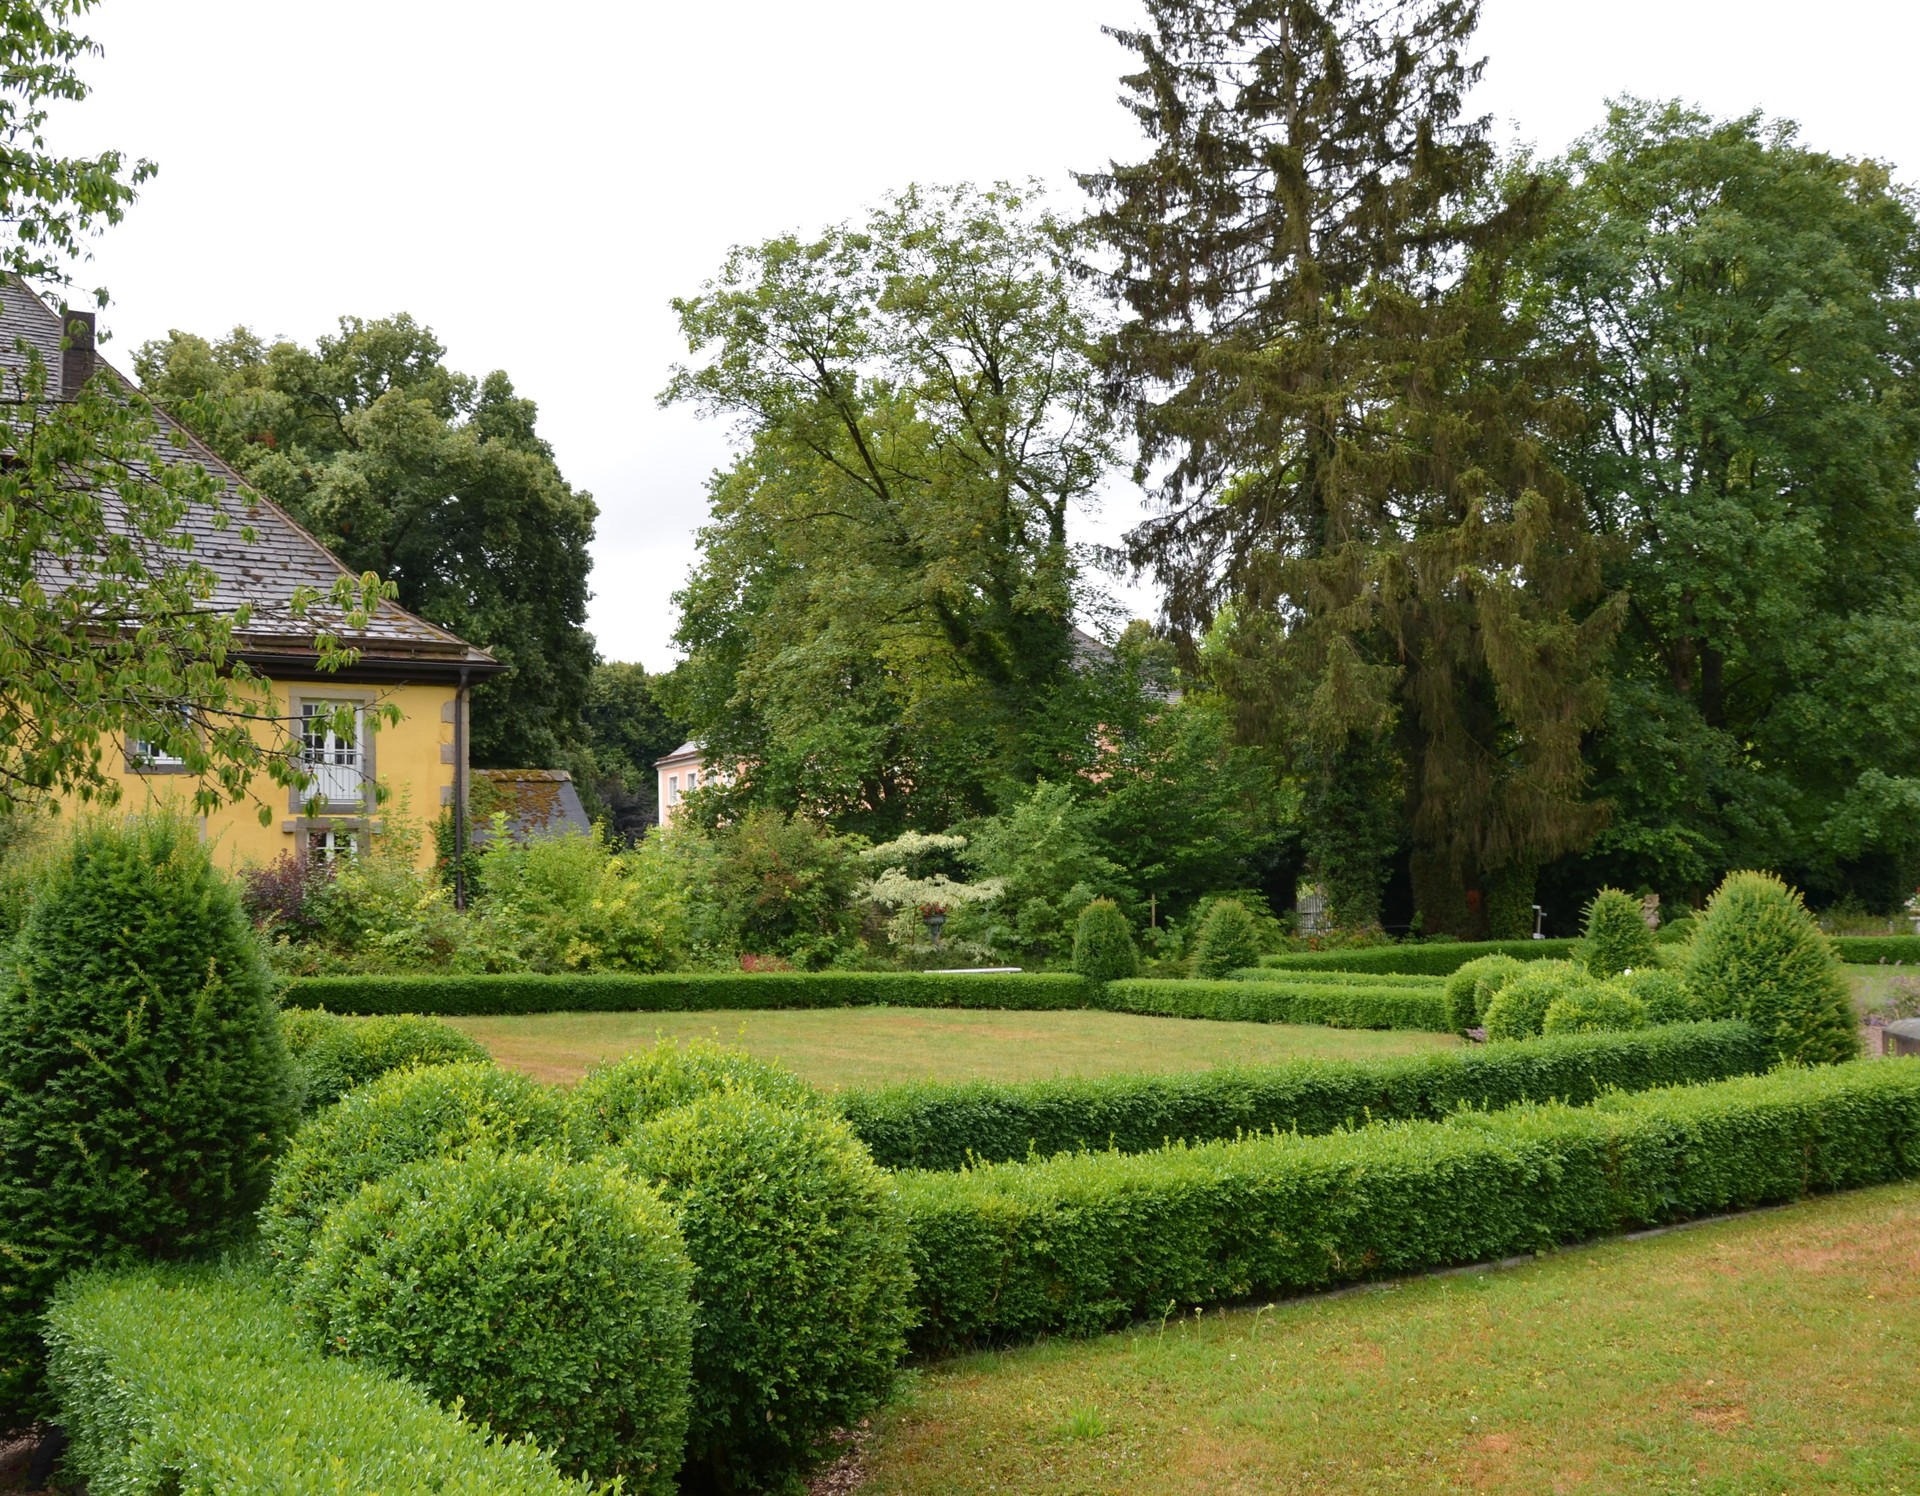 Landschaftspark Rheder in Brakel, barocke Gartengestaltung